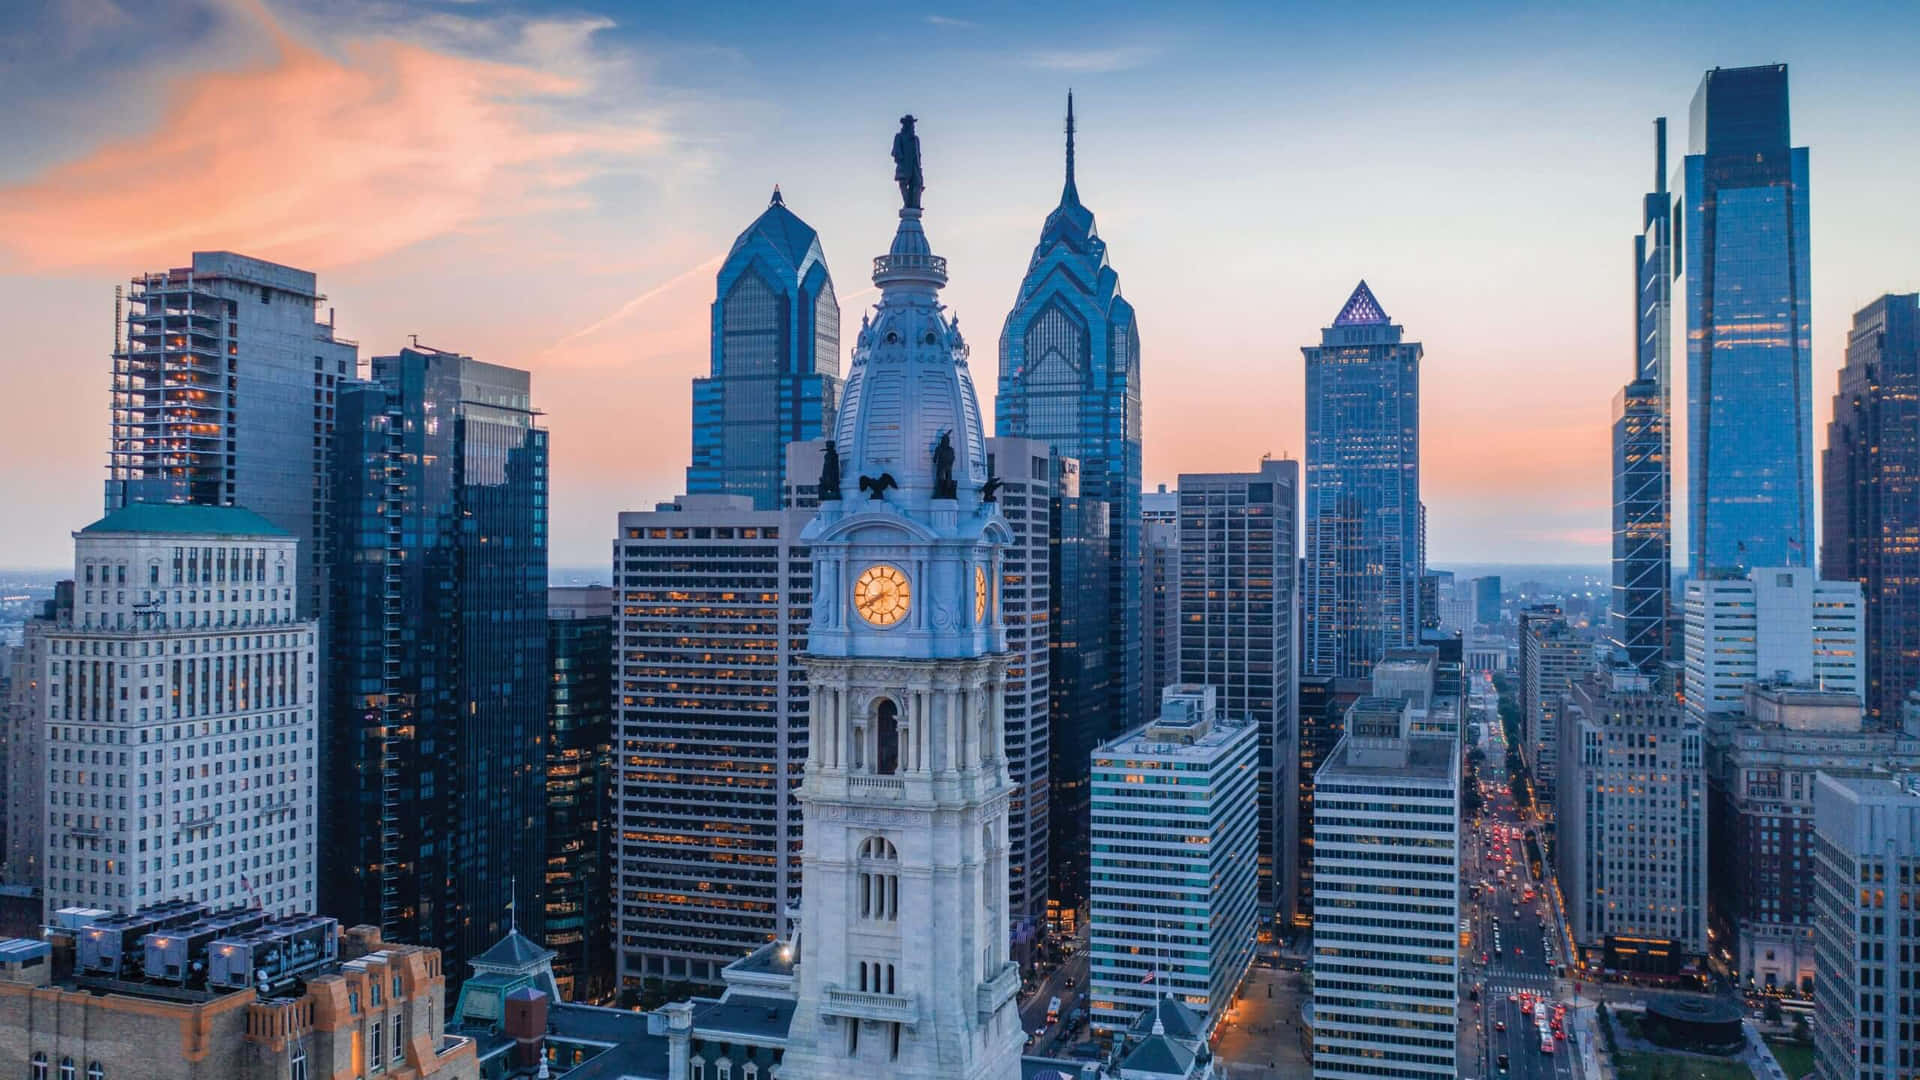 The Philadelphia skyline at dusk Wallpaper